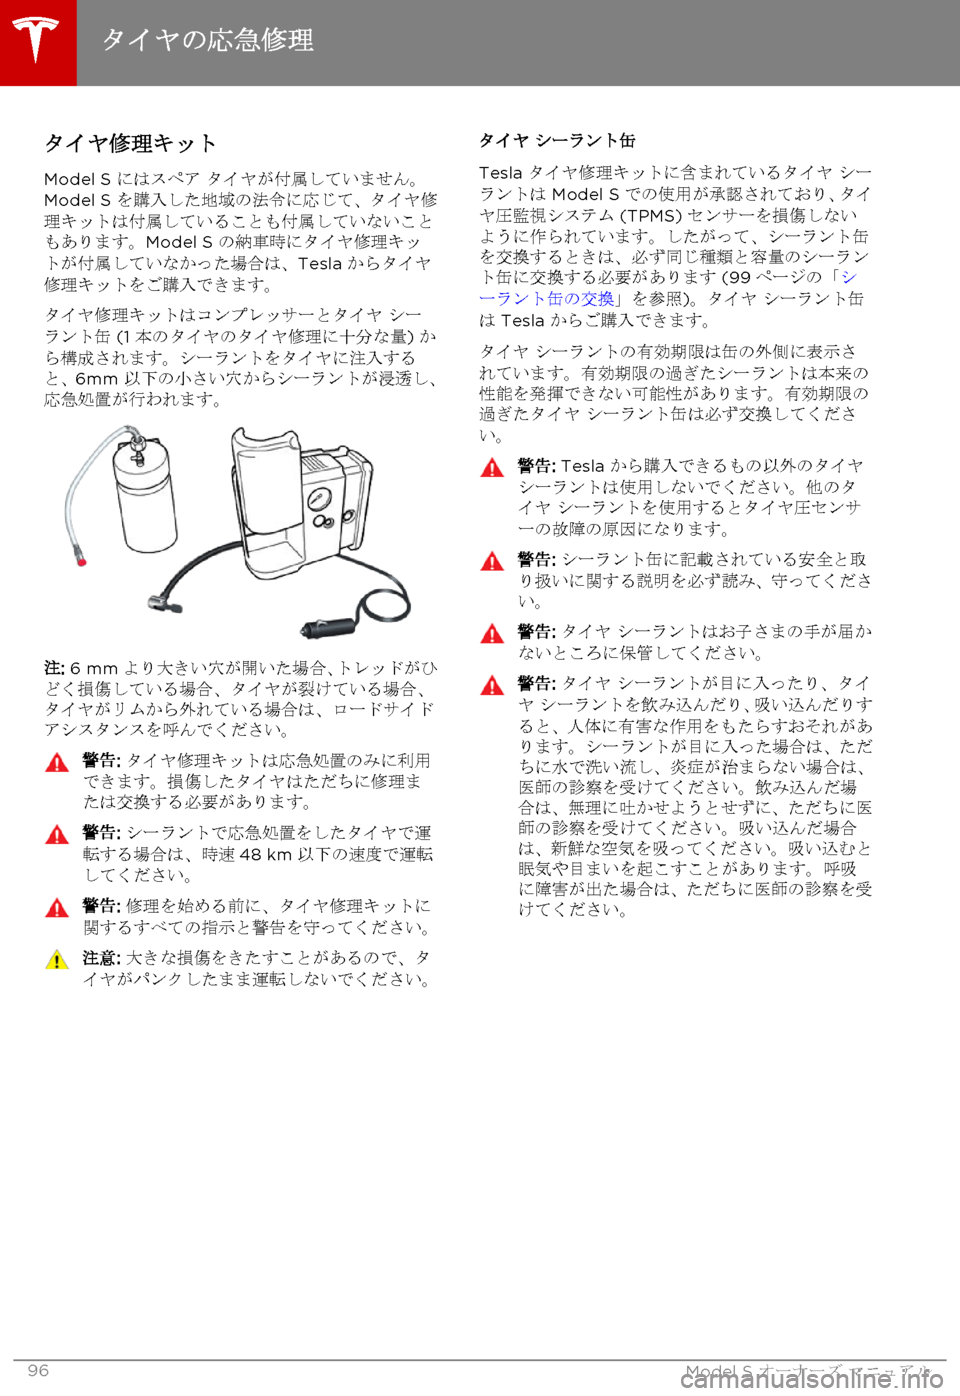 TESLA MODEL S 2015  取扱説明書 (in Japanese)  タイヤ修理キット
Model S にはスペア タイヤが付属していません。Model S を購入した地域の法令に応じて、タイヤ修理キットは付属していることも付�